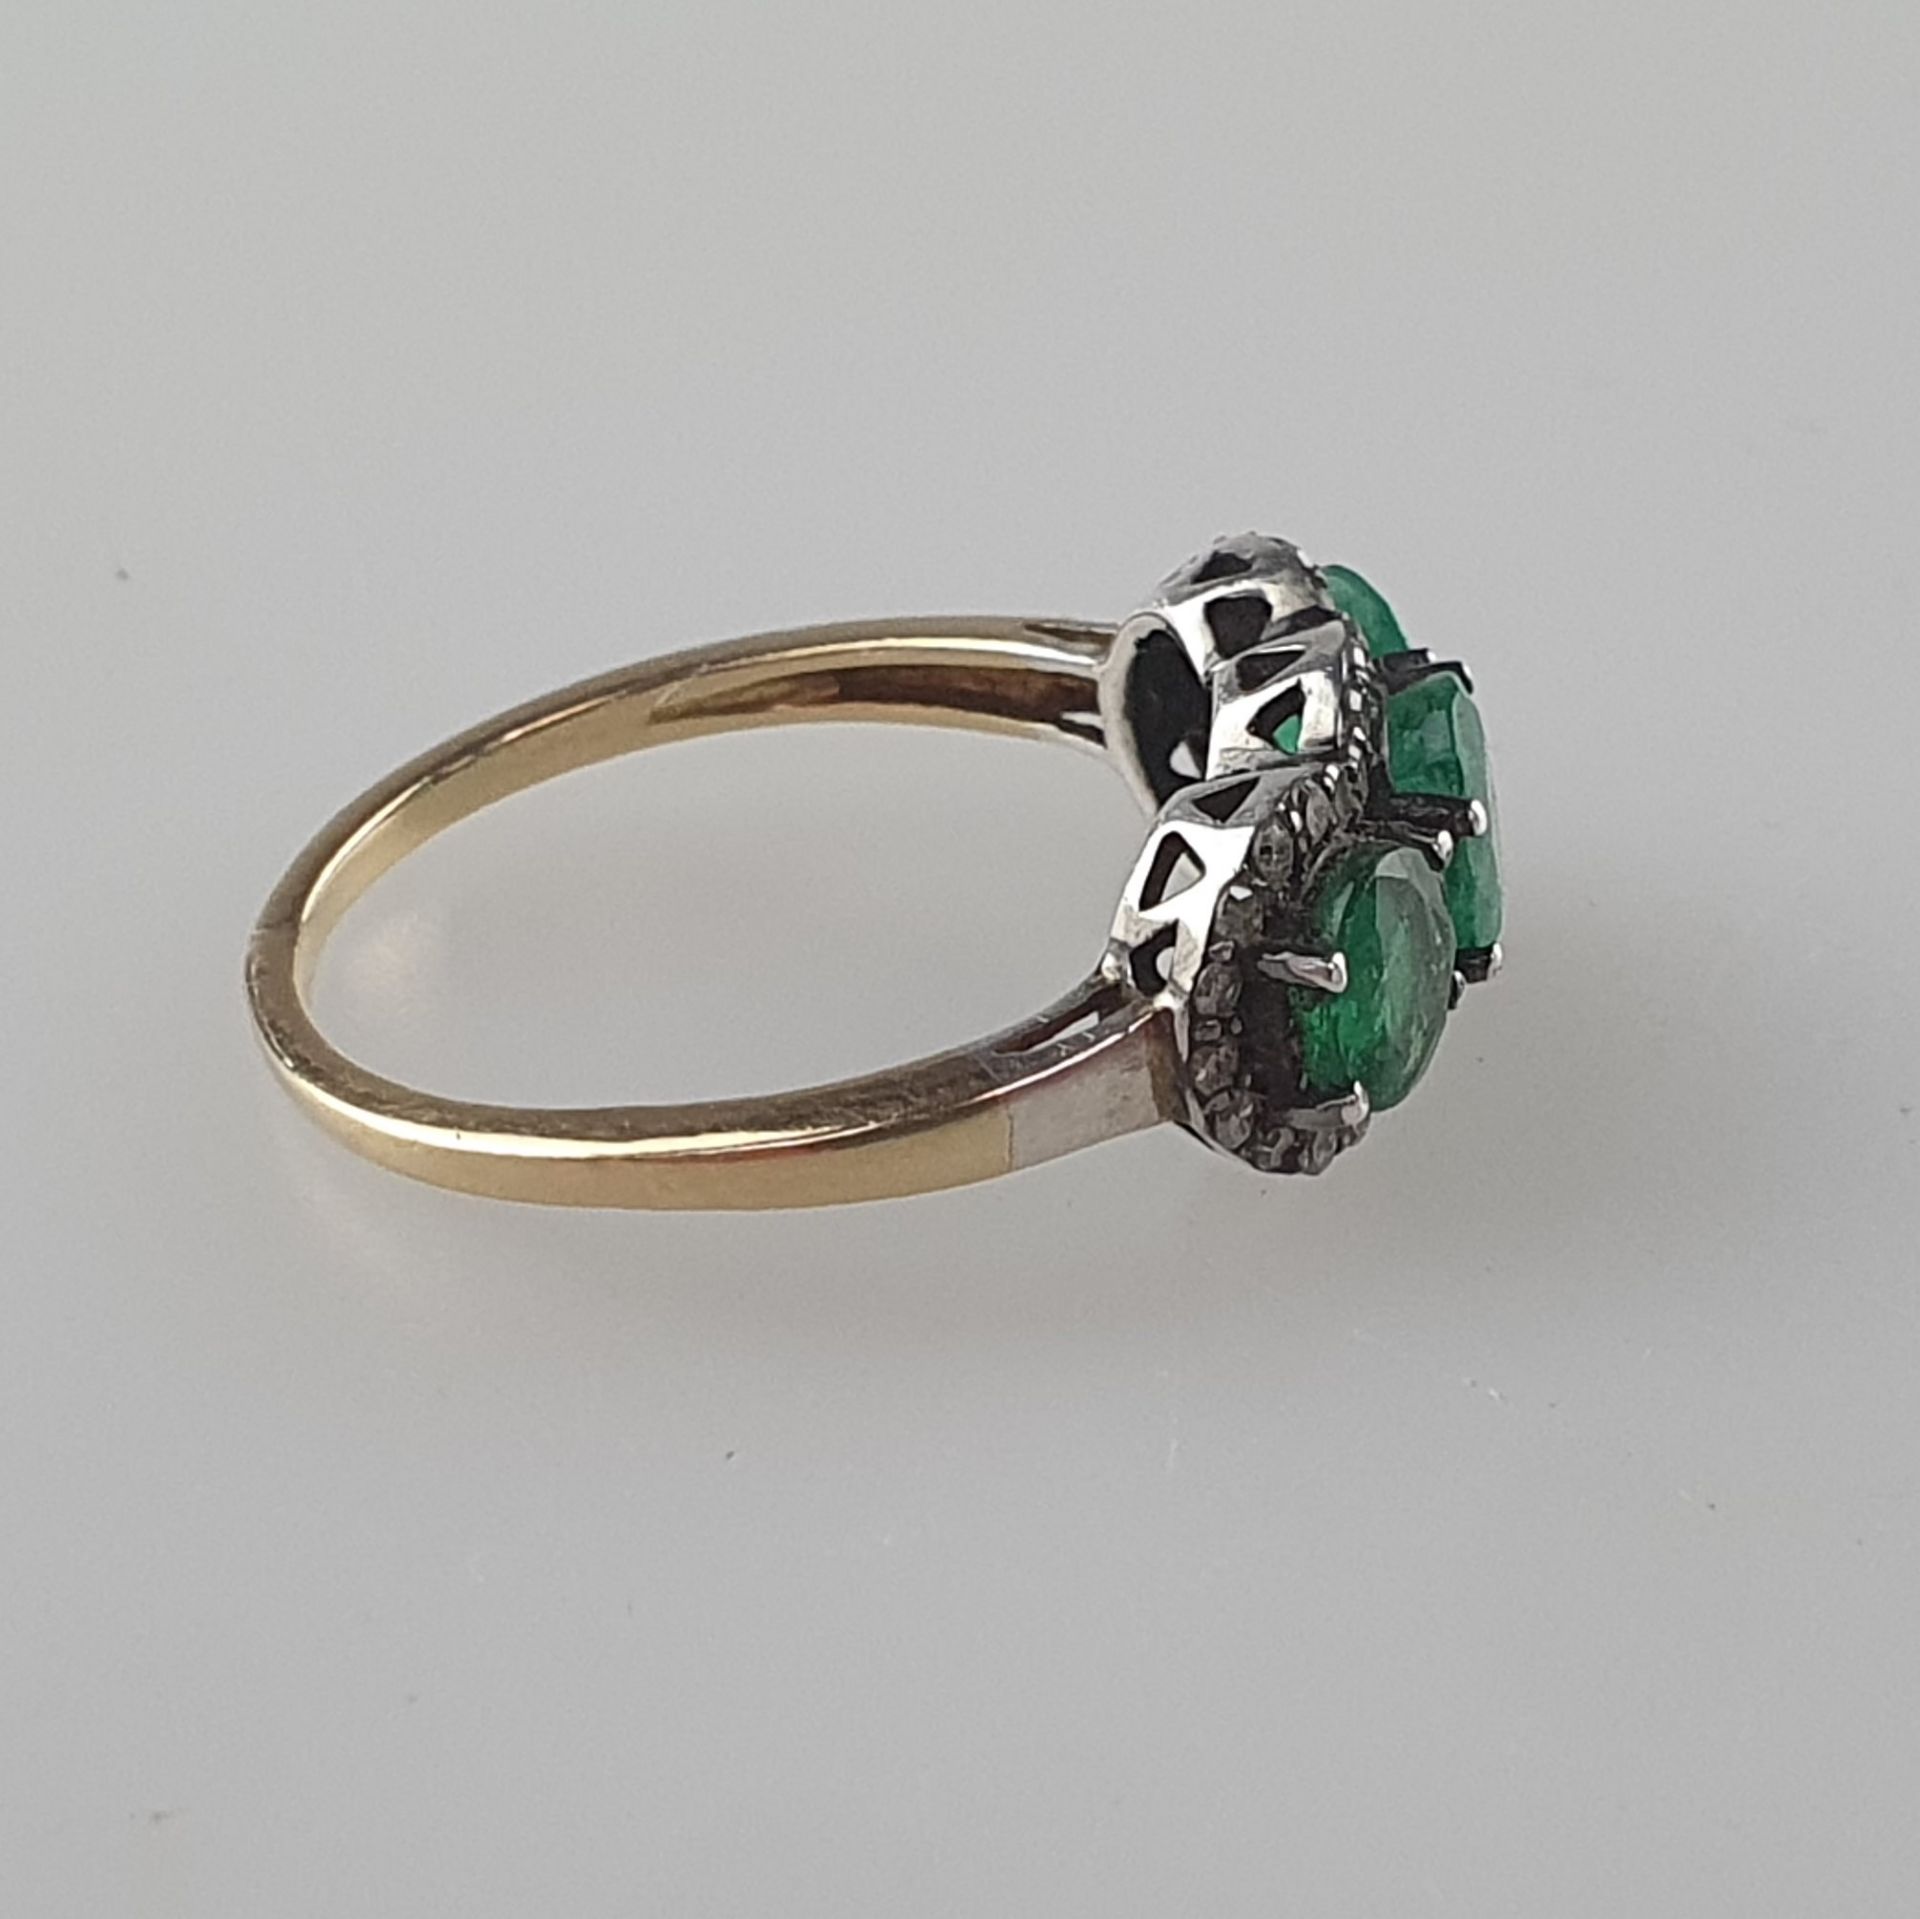 Smaragdring mit Diamanten - Silber, teils vergoldet, Besatz mit drei rund geschliffenen Smaragden v - Bild 3 aus 5